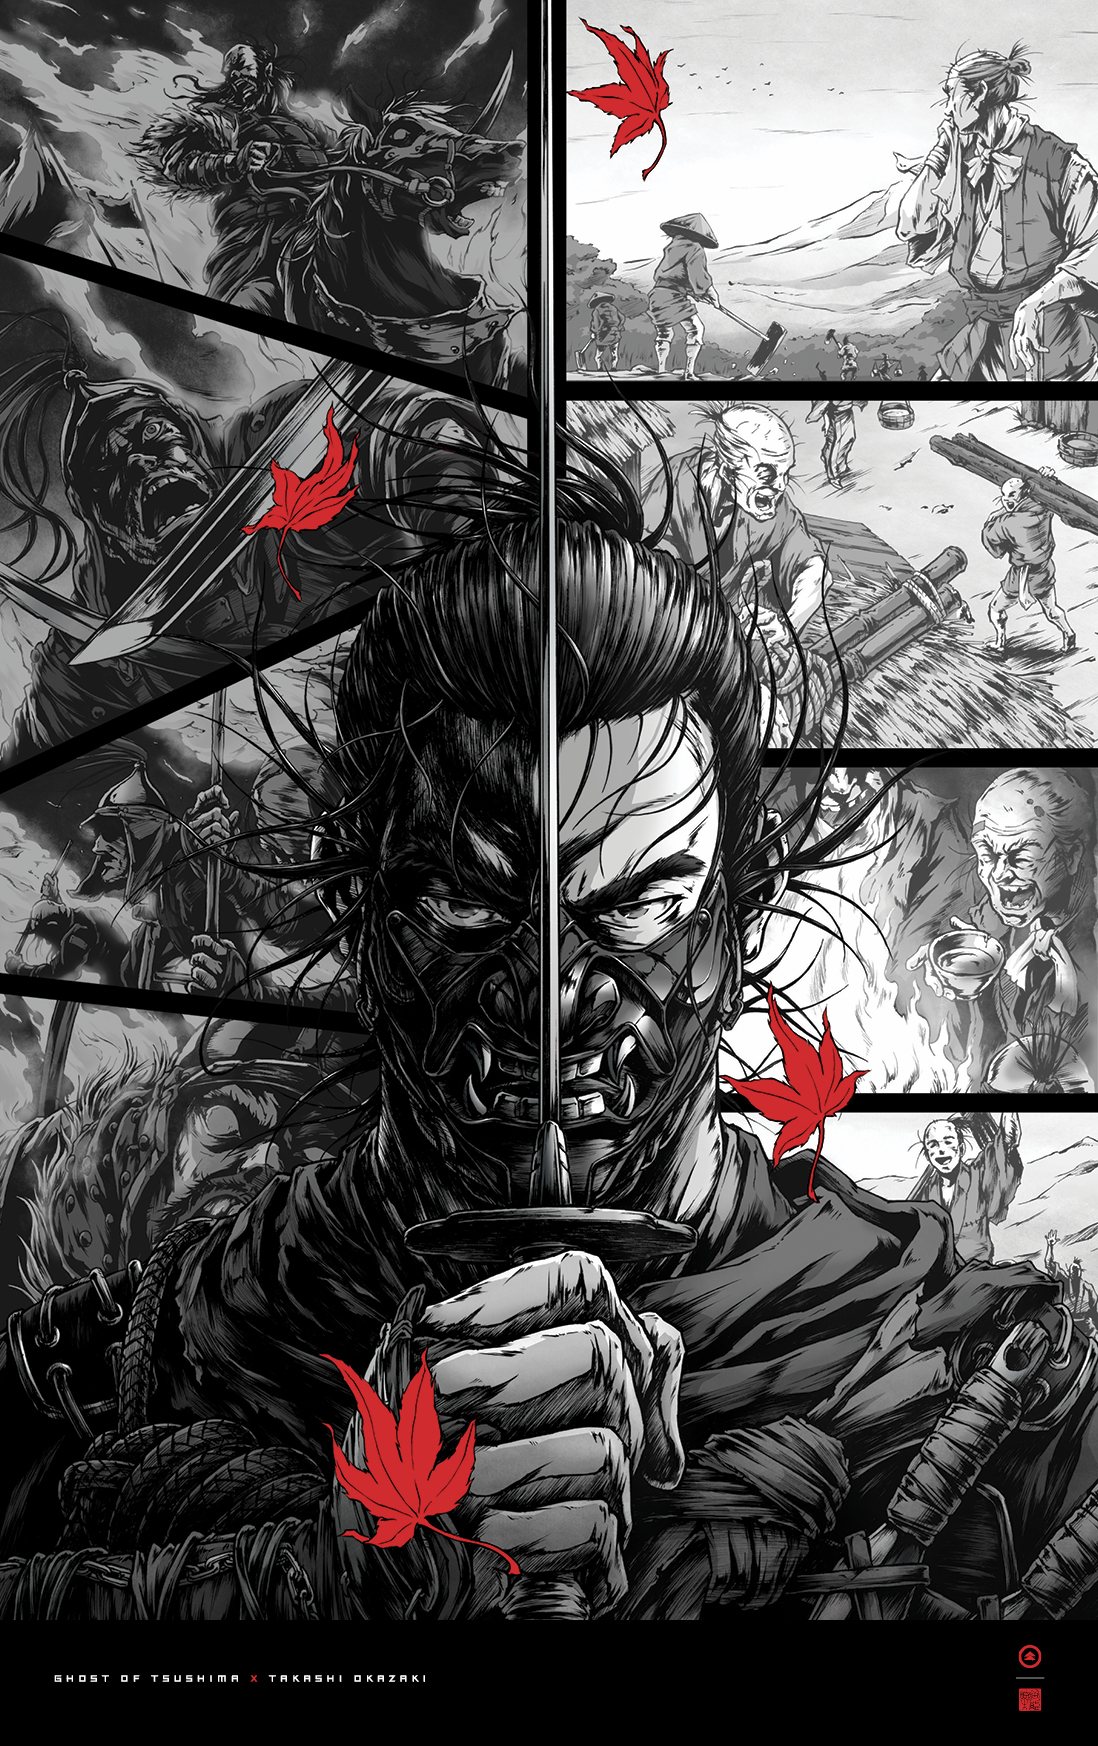 漫画家冈崎能士《对马岛之鬼》艺术海报公开